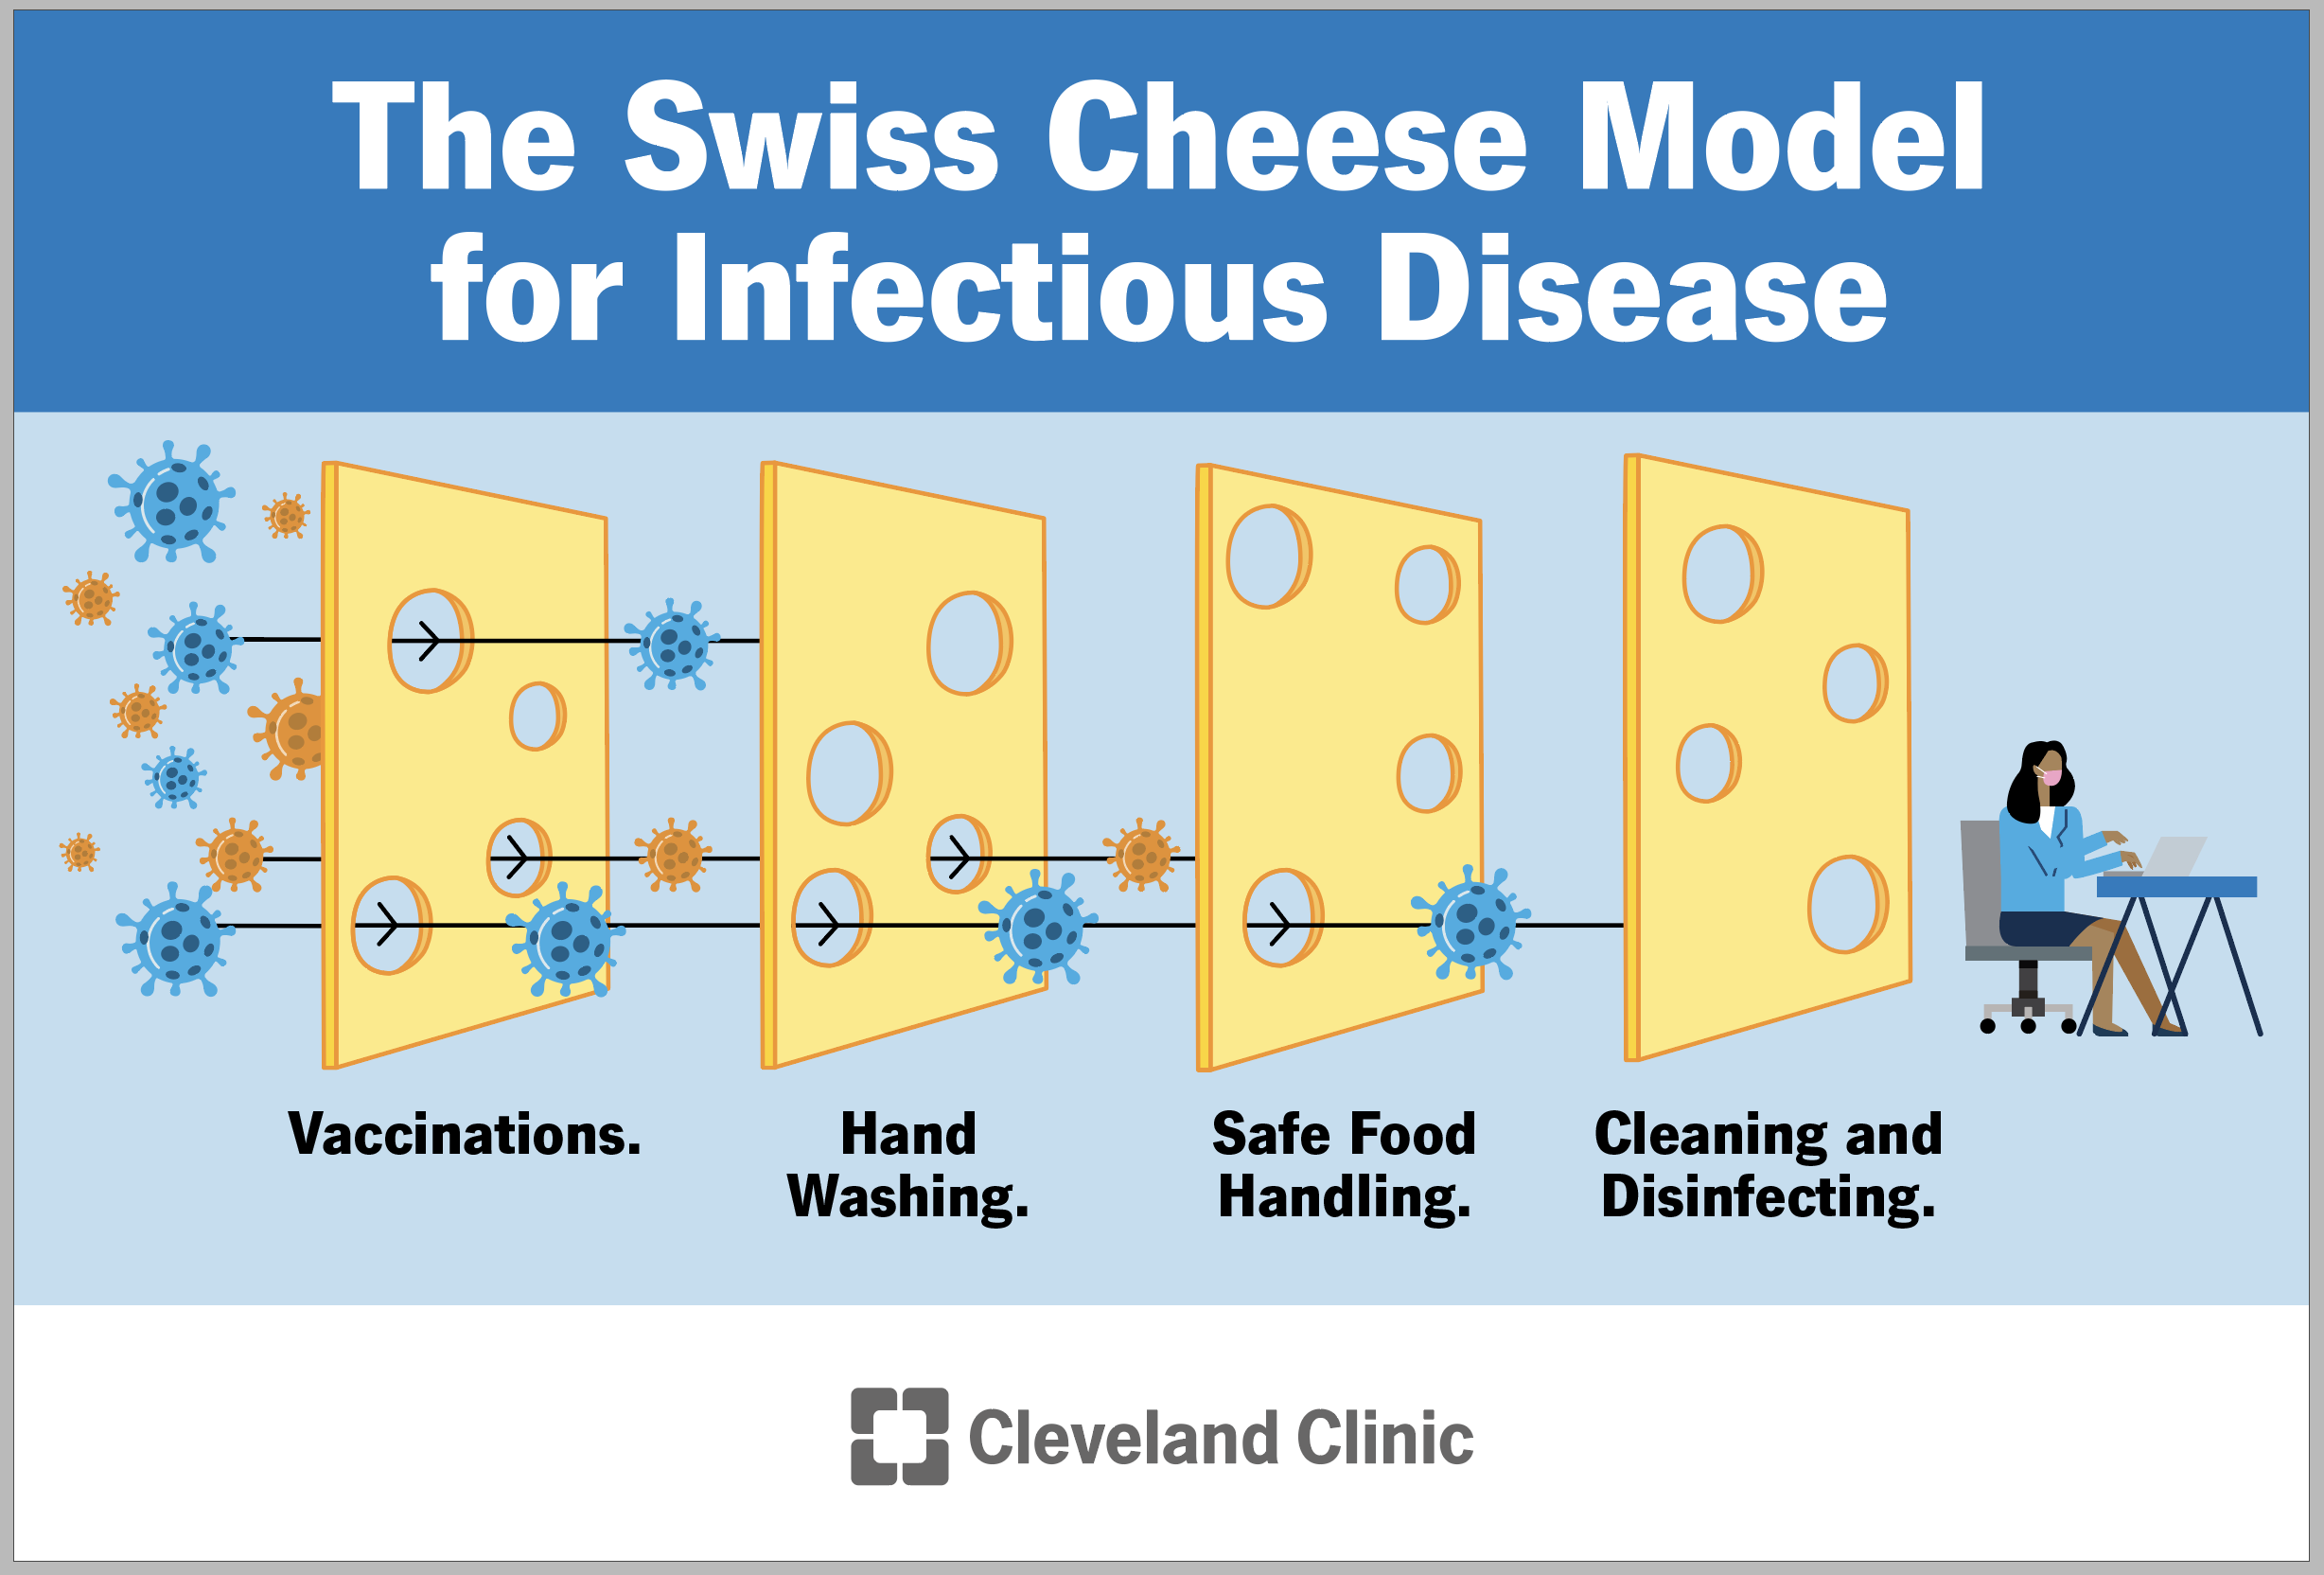 Il modello Swiss Cheese mostra come le vaccinazioni, il lavaggio delle mani, la manipolazione sicura degli alimenti e la pulizia lavorano insieme per prevenire le malattie.